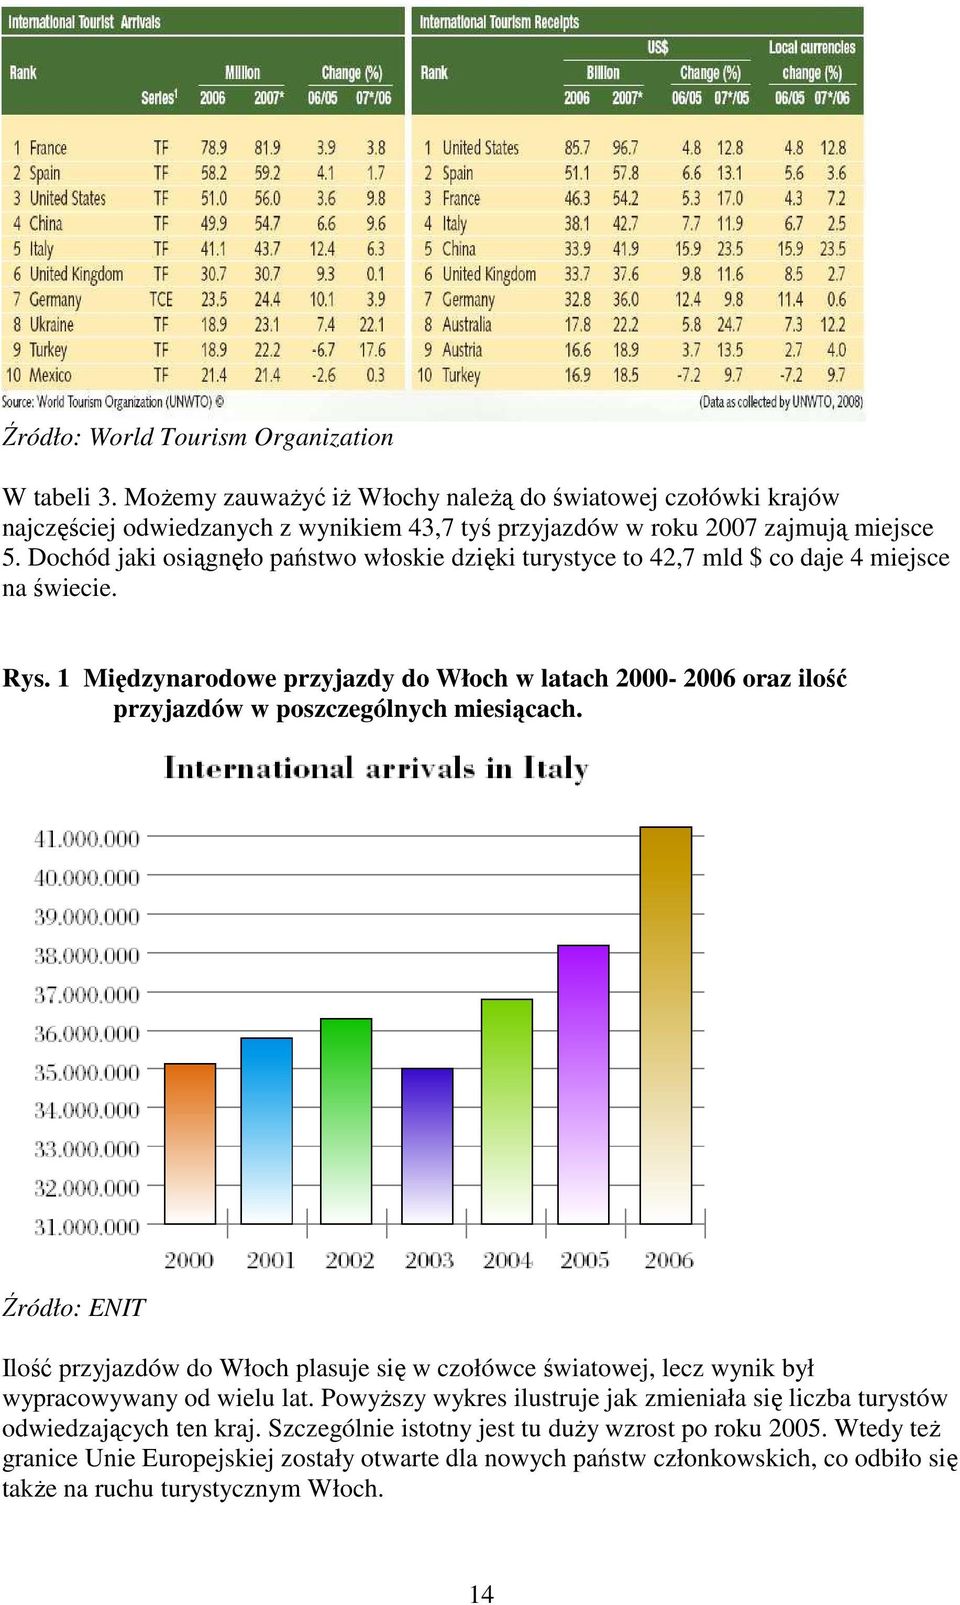 1 Międzynarodowe przyjazdy do Włoch w latach 2000-2006 oraz ilość przyjazdów w poszczególnych miesiącach.